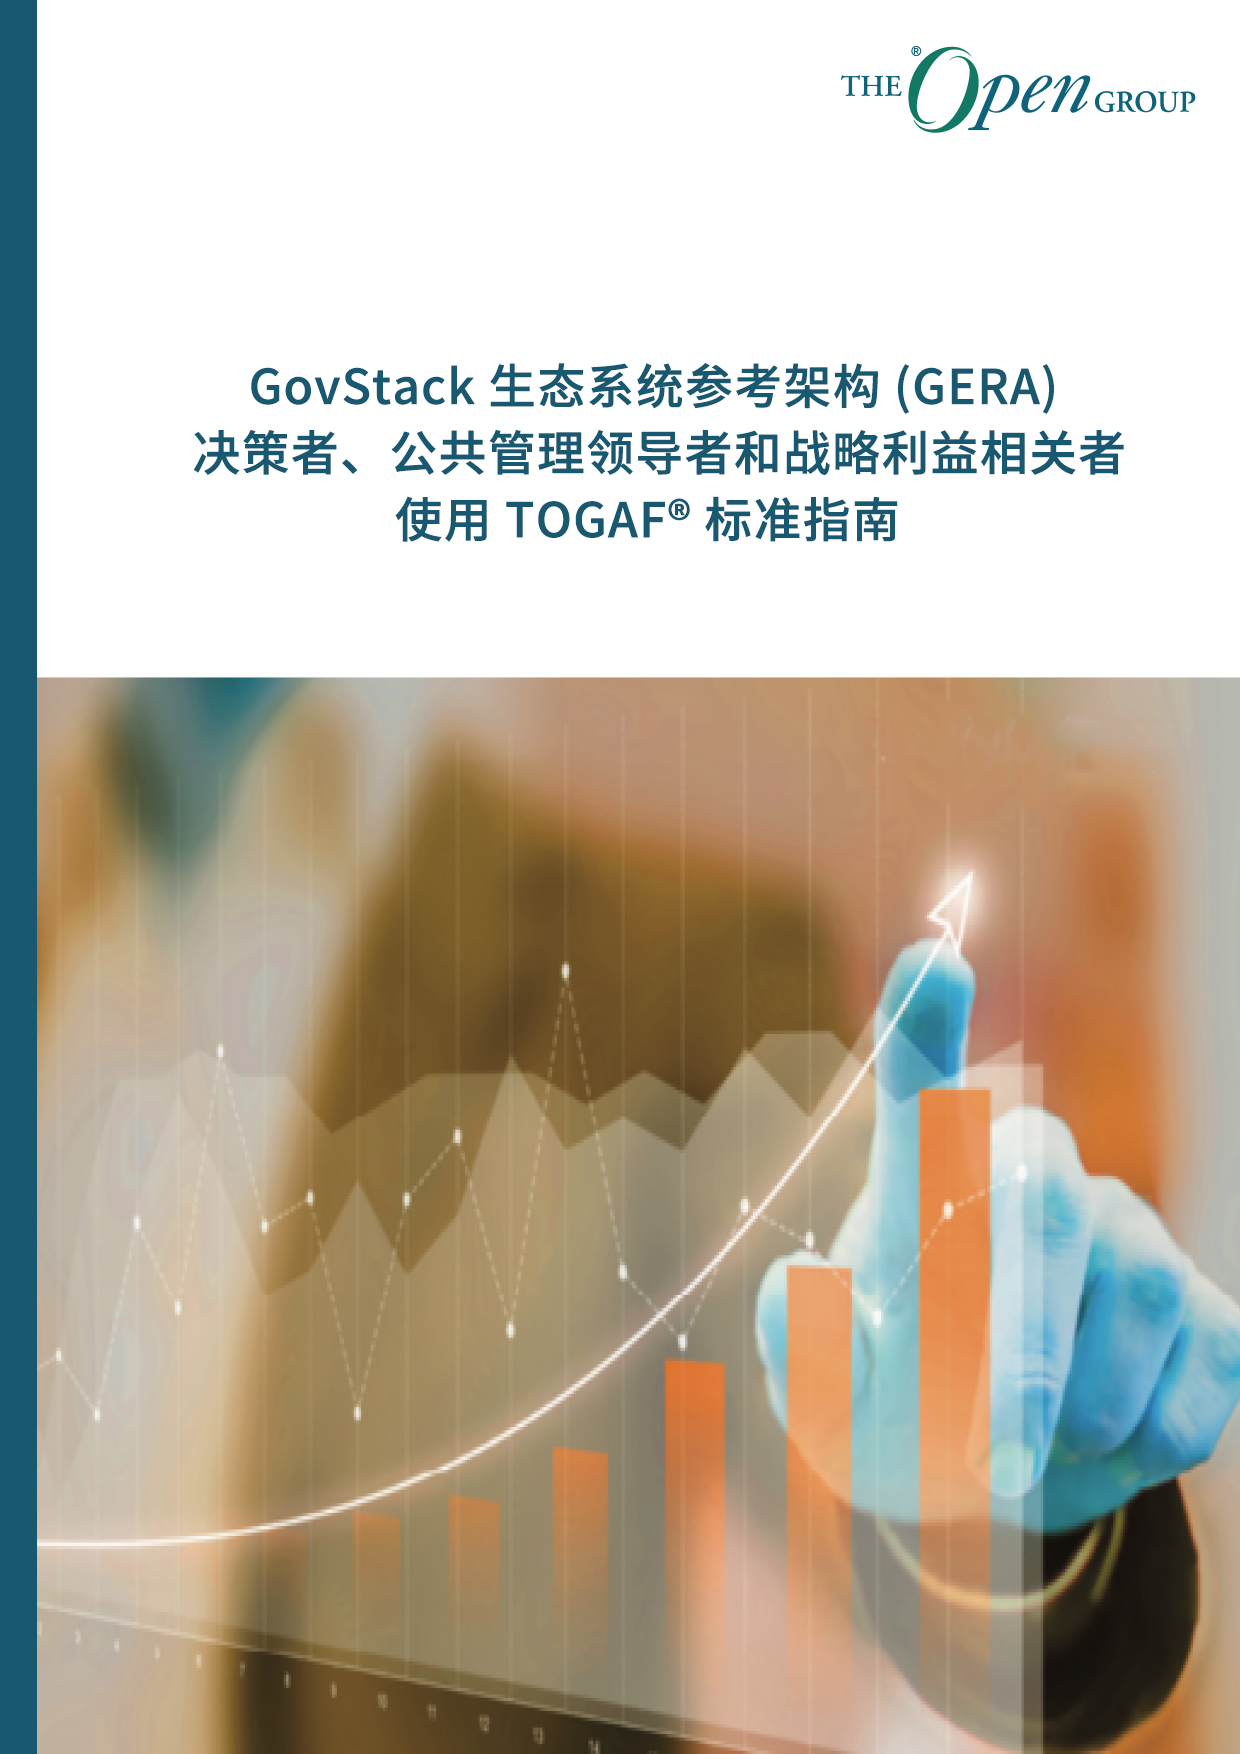 GovStack 生态系统参考架构 (GERA)： 决策者、公共管理领导者和战略利益相关者使用 TOGAF® 标准指南 